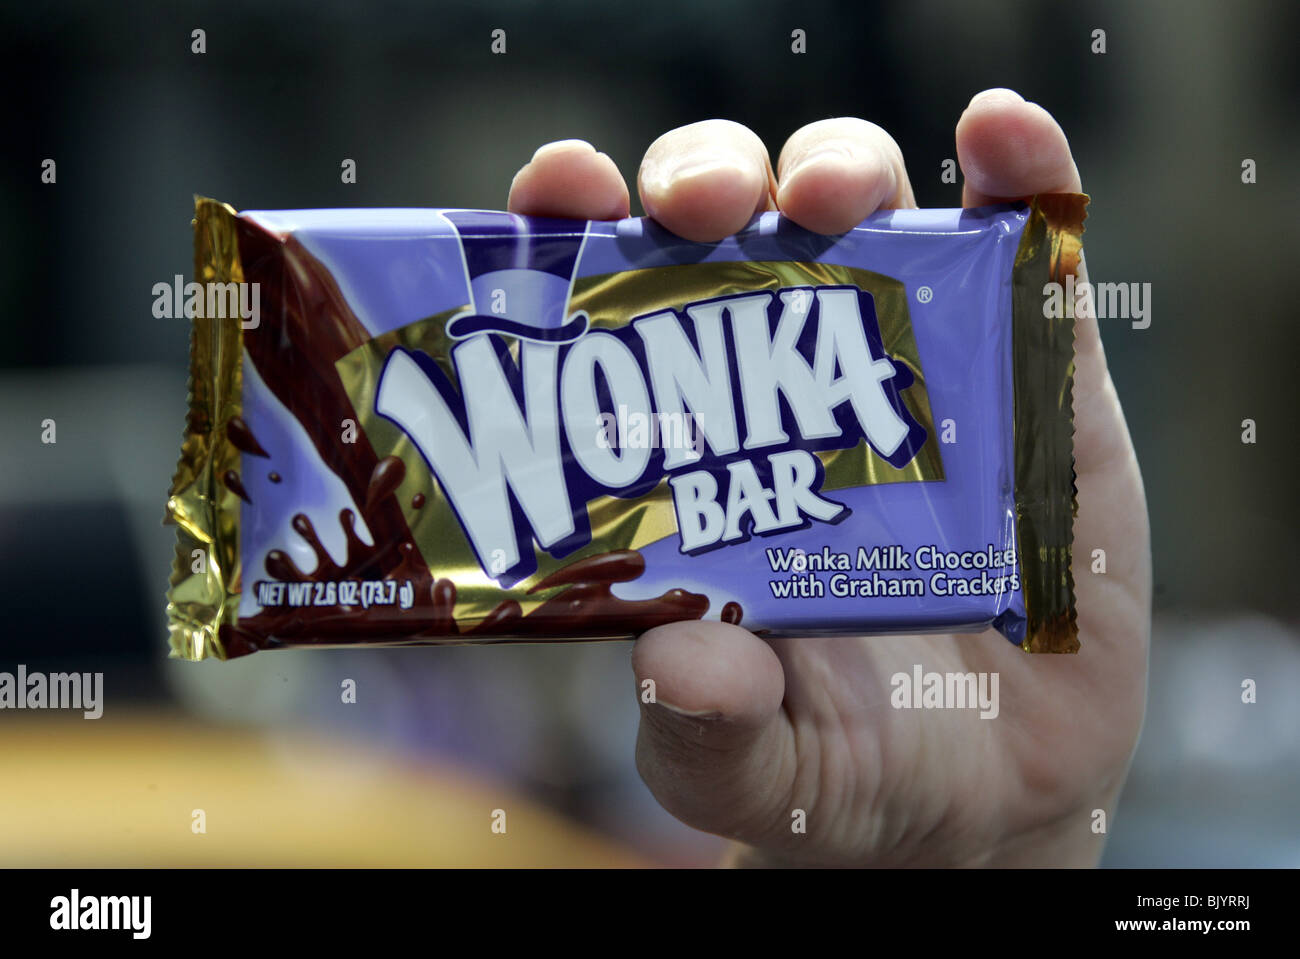 Wonka bar immagini e fotografie stock ad alta risoluzione - Alamy